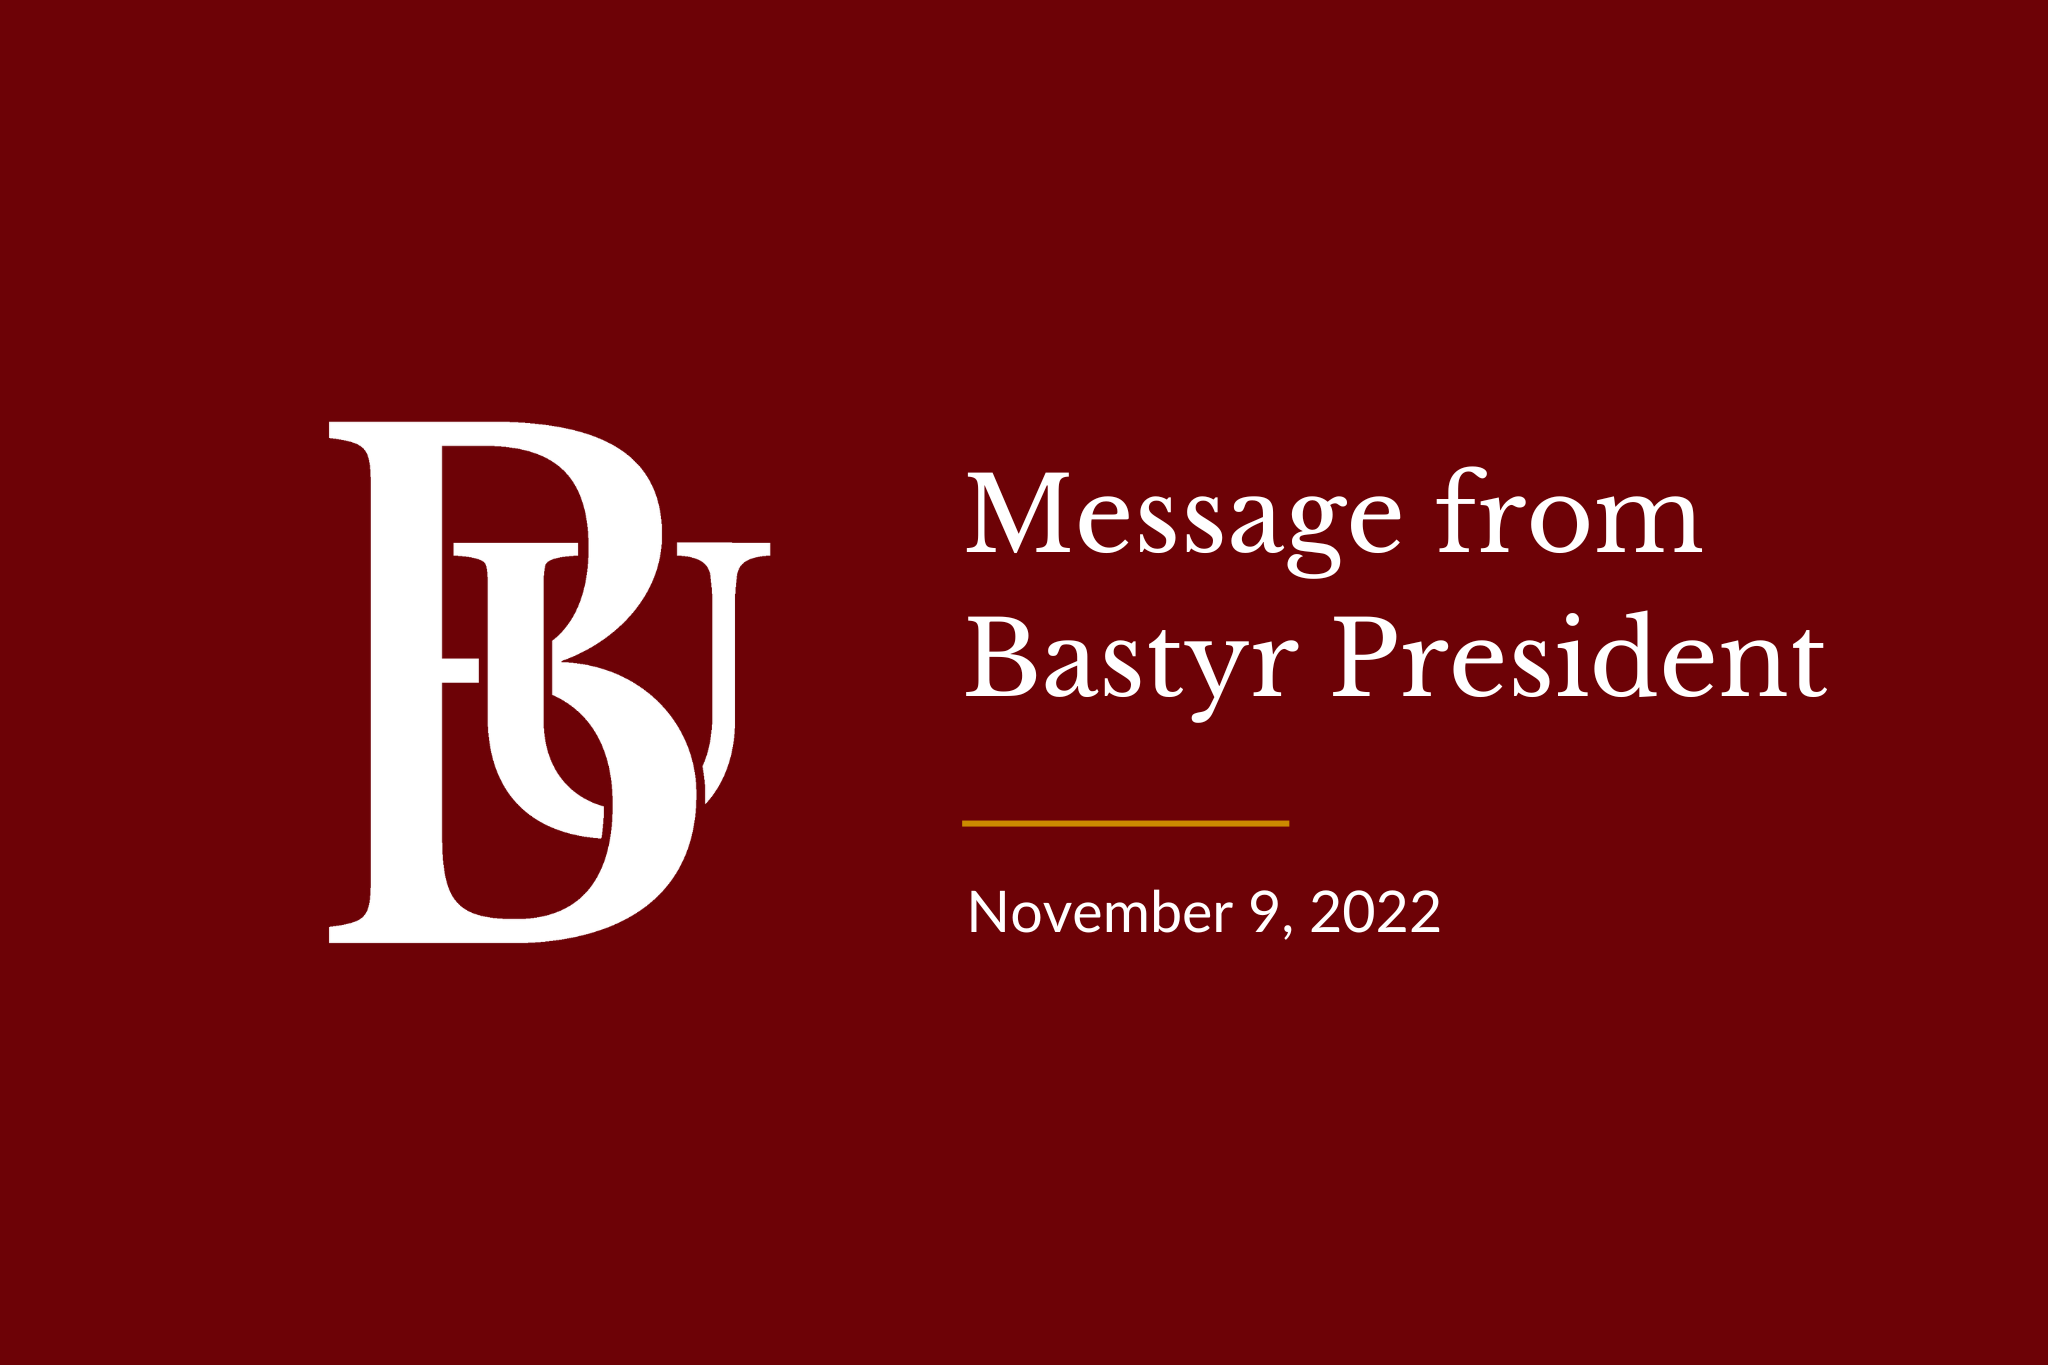 Message from Bastyr President November 9, 2022